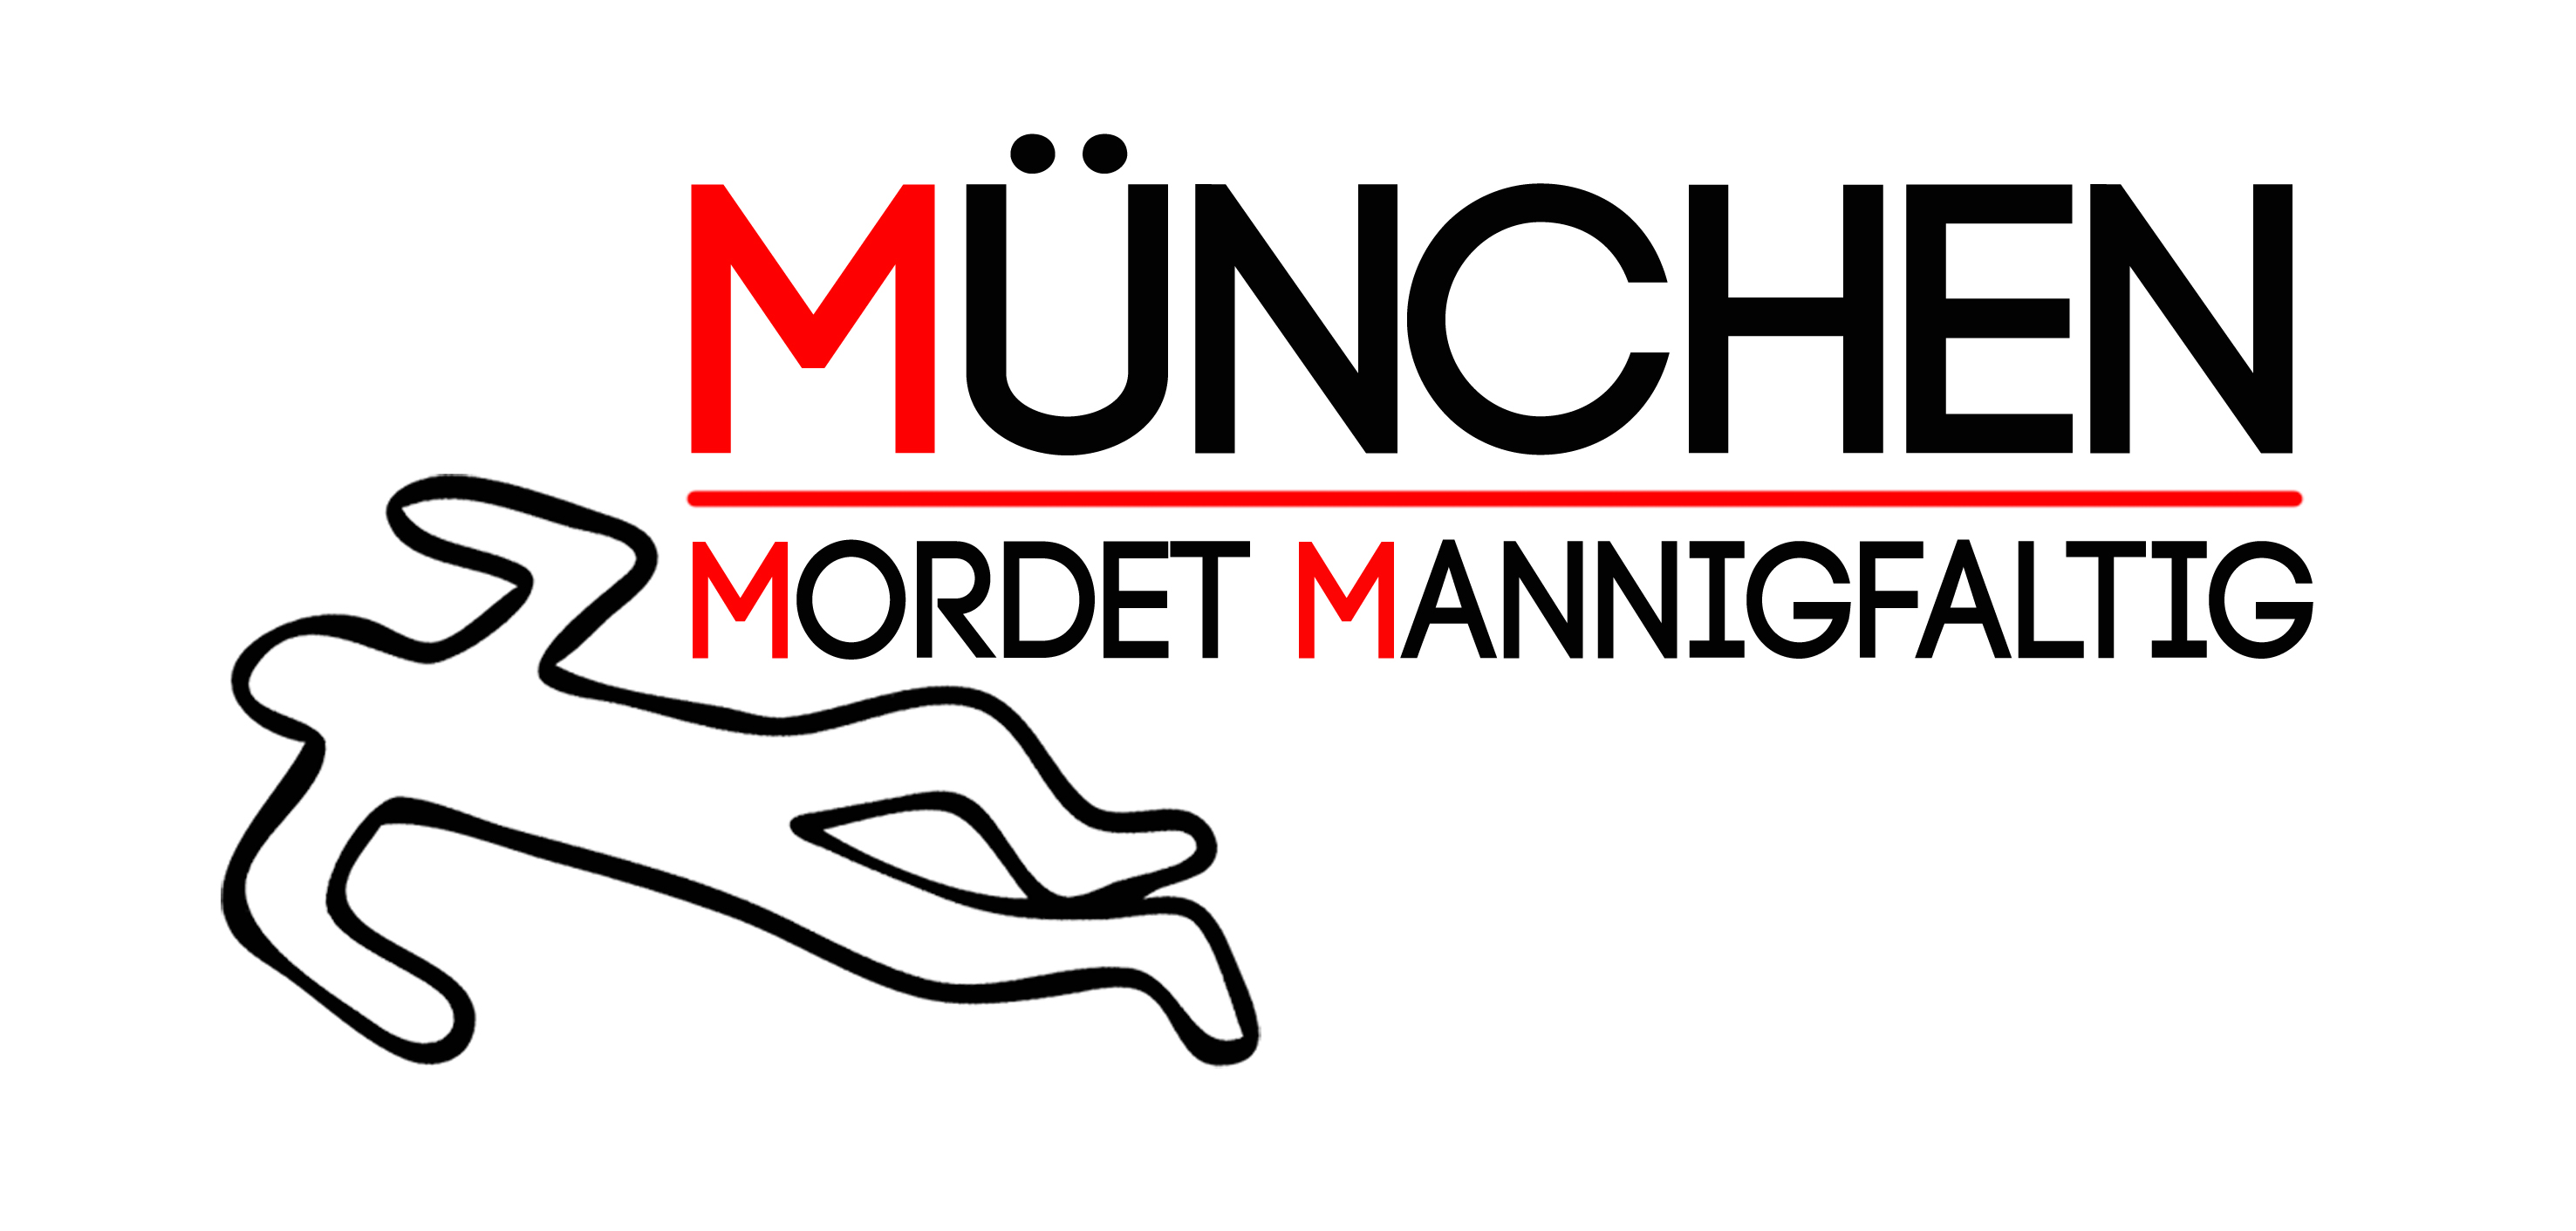 Logo der Vernstaltungsreihe MMM München Mordet Mannigfaltig. Schriftzug München Mordet Mannigfaltig und der Umriss einer Leiche